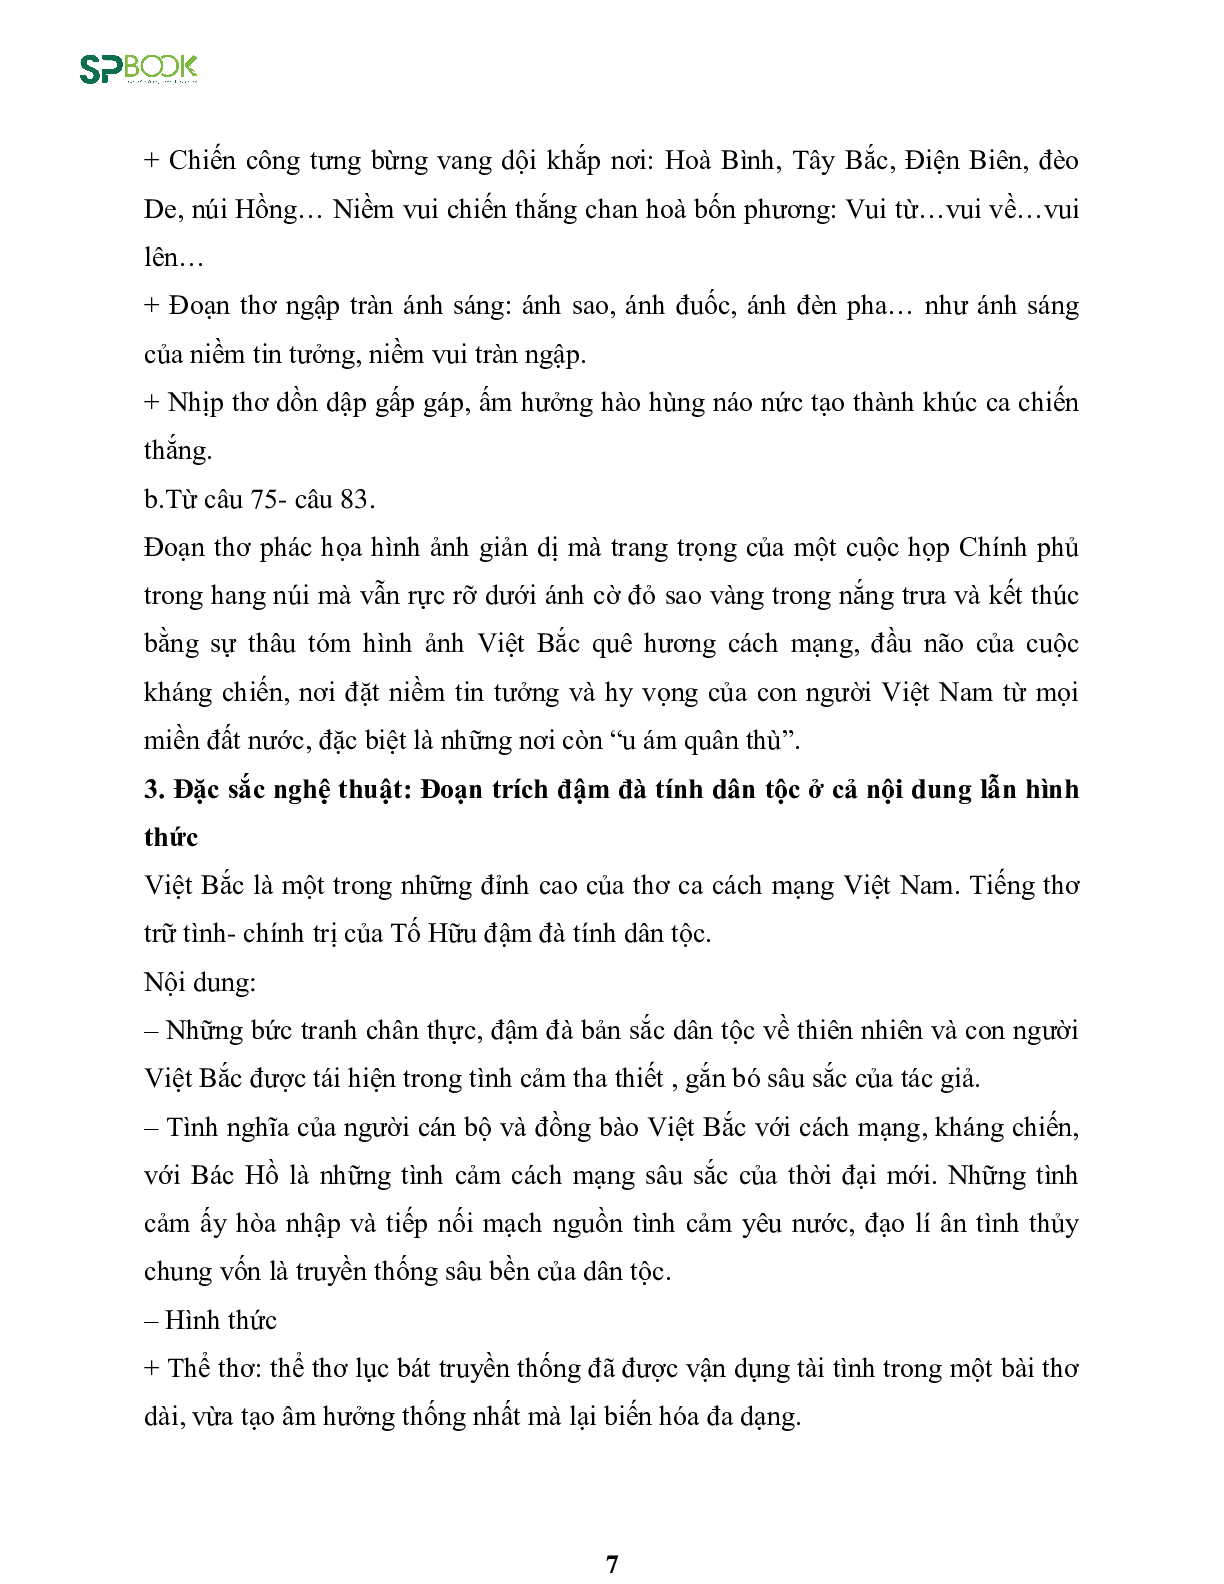 Kiến thức cơ bản và những dạng đề thi về bài Việt Bắc - Tố Hữu Văn 12 (trang 7)